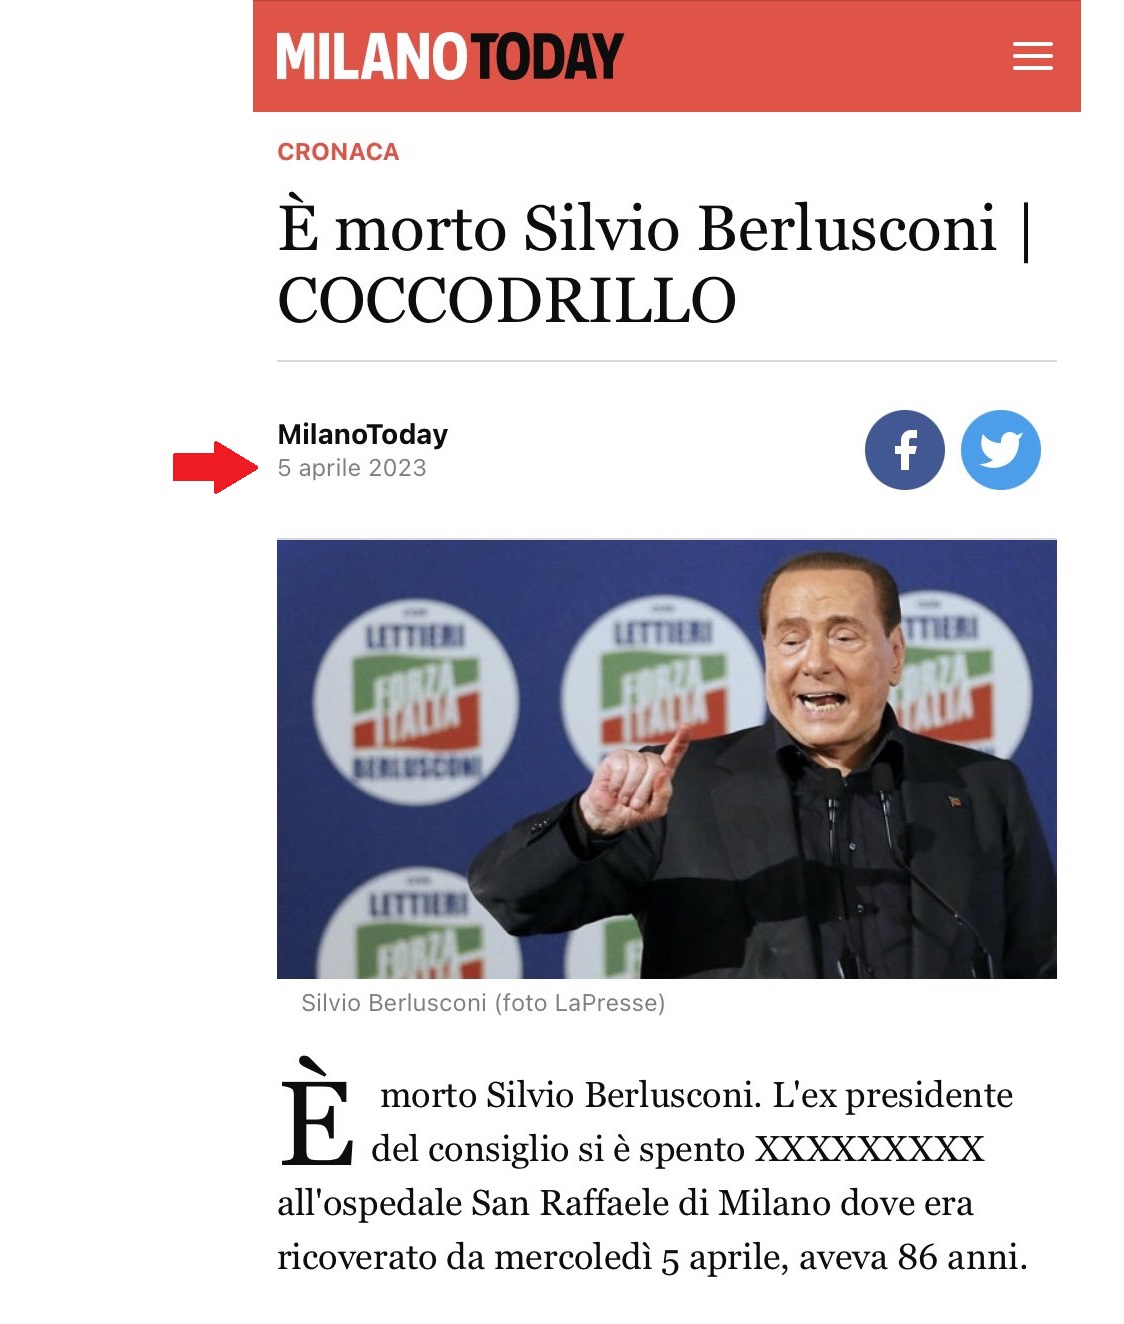 schermata dal sito Milano Today del 5 aprile 2023 con articolo pubblicato per sbaglio dal titolo “È morto Silvio Berlusconi. COCCODRILLO” 